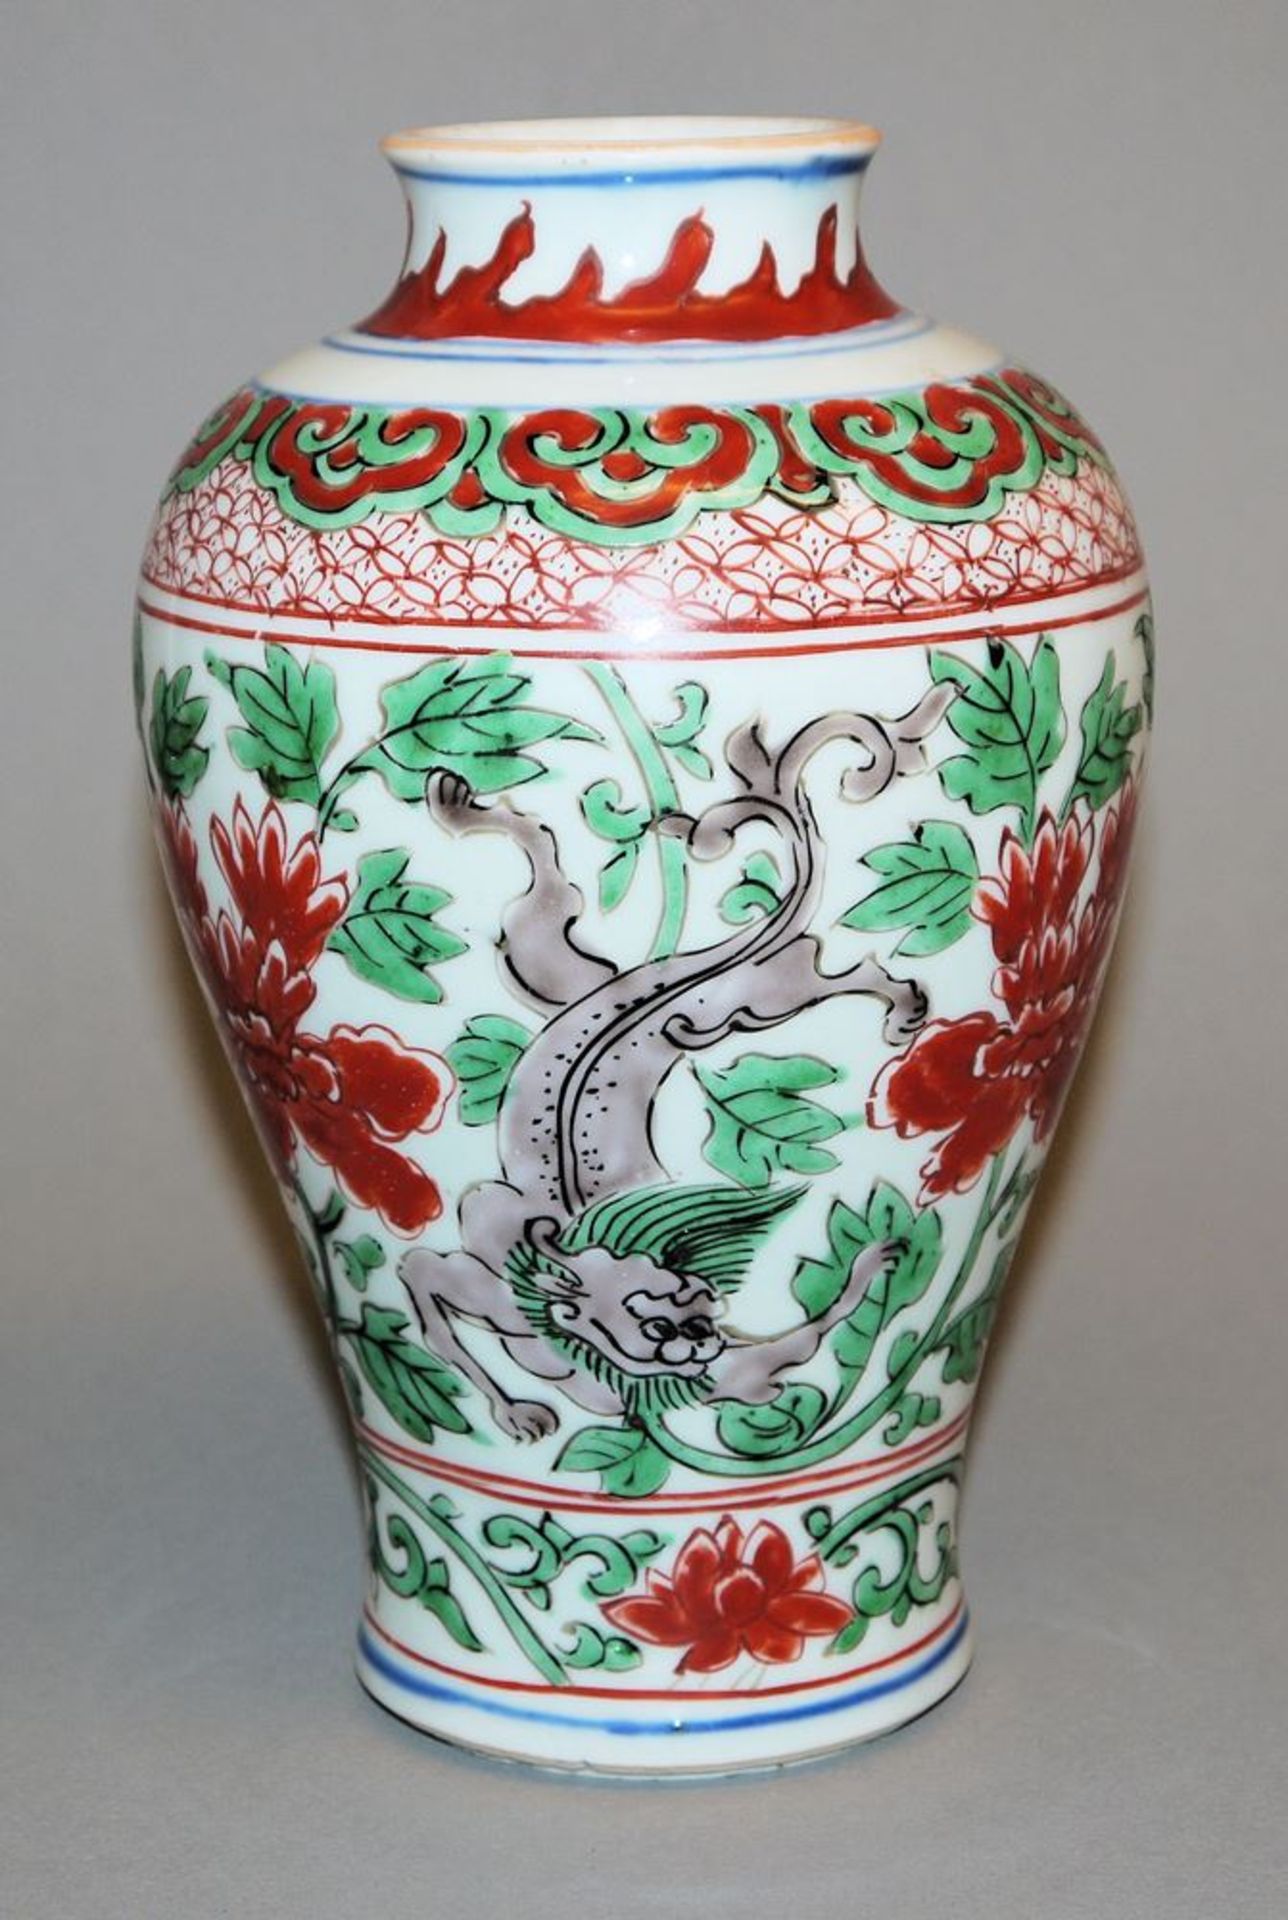 Wucai baluster vase of the Kangxi period, China circa 1700